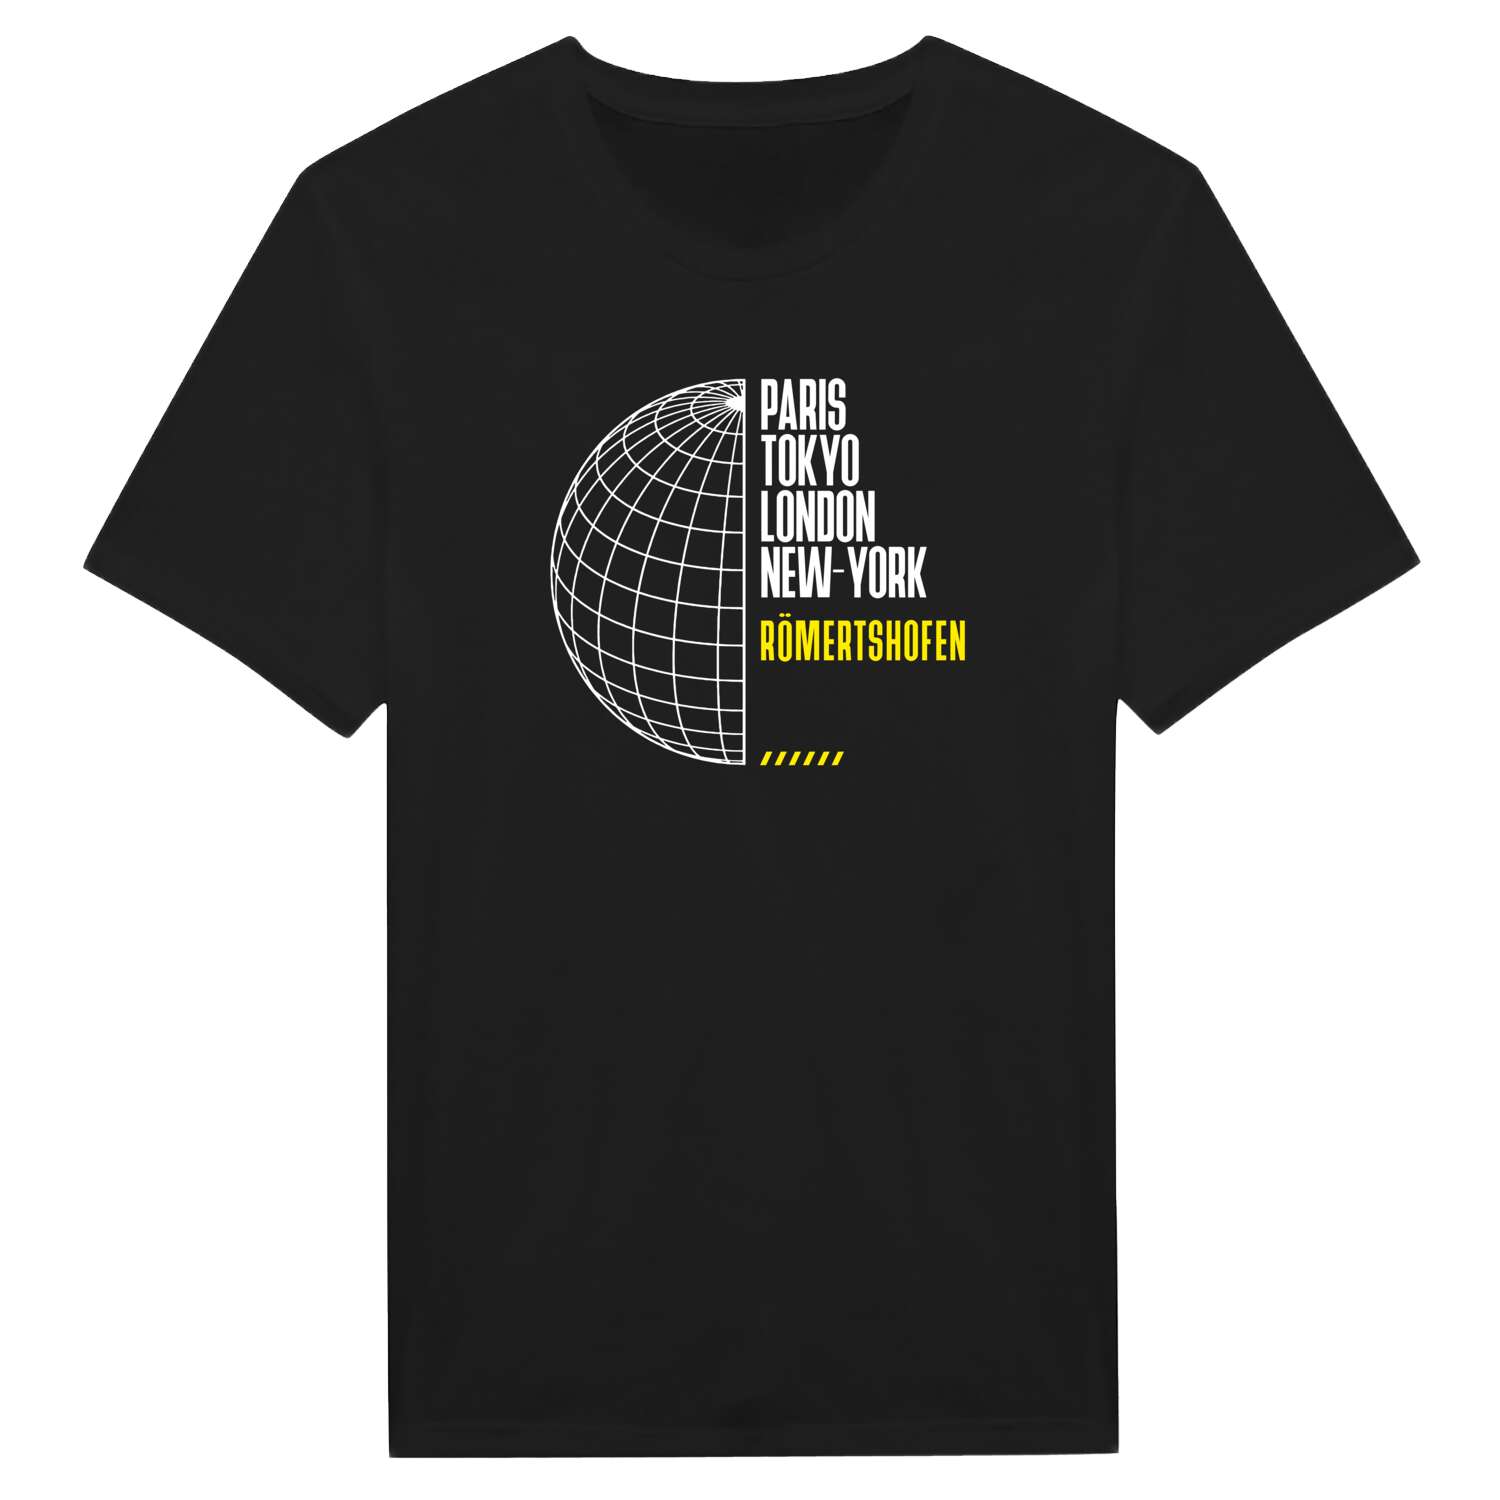 Römertshofen T-Shirt »Paris Tokyo London«